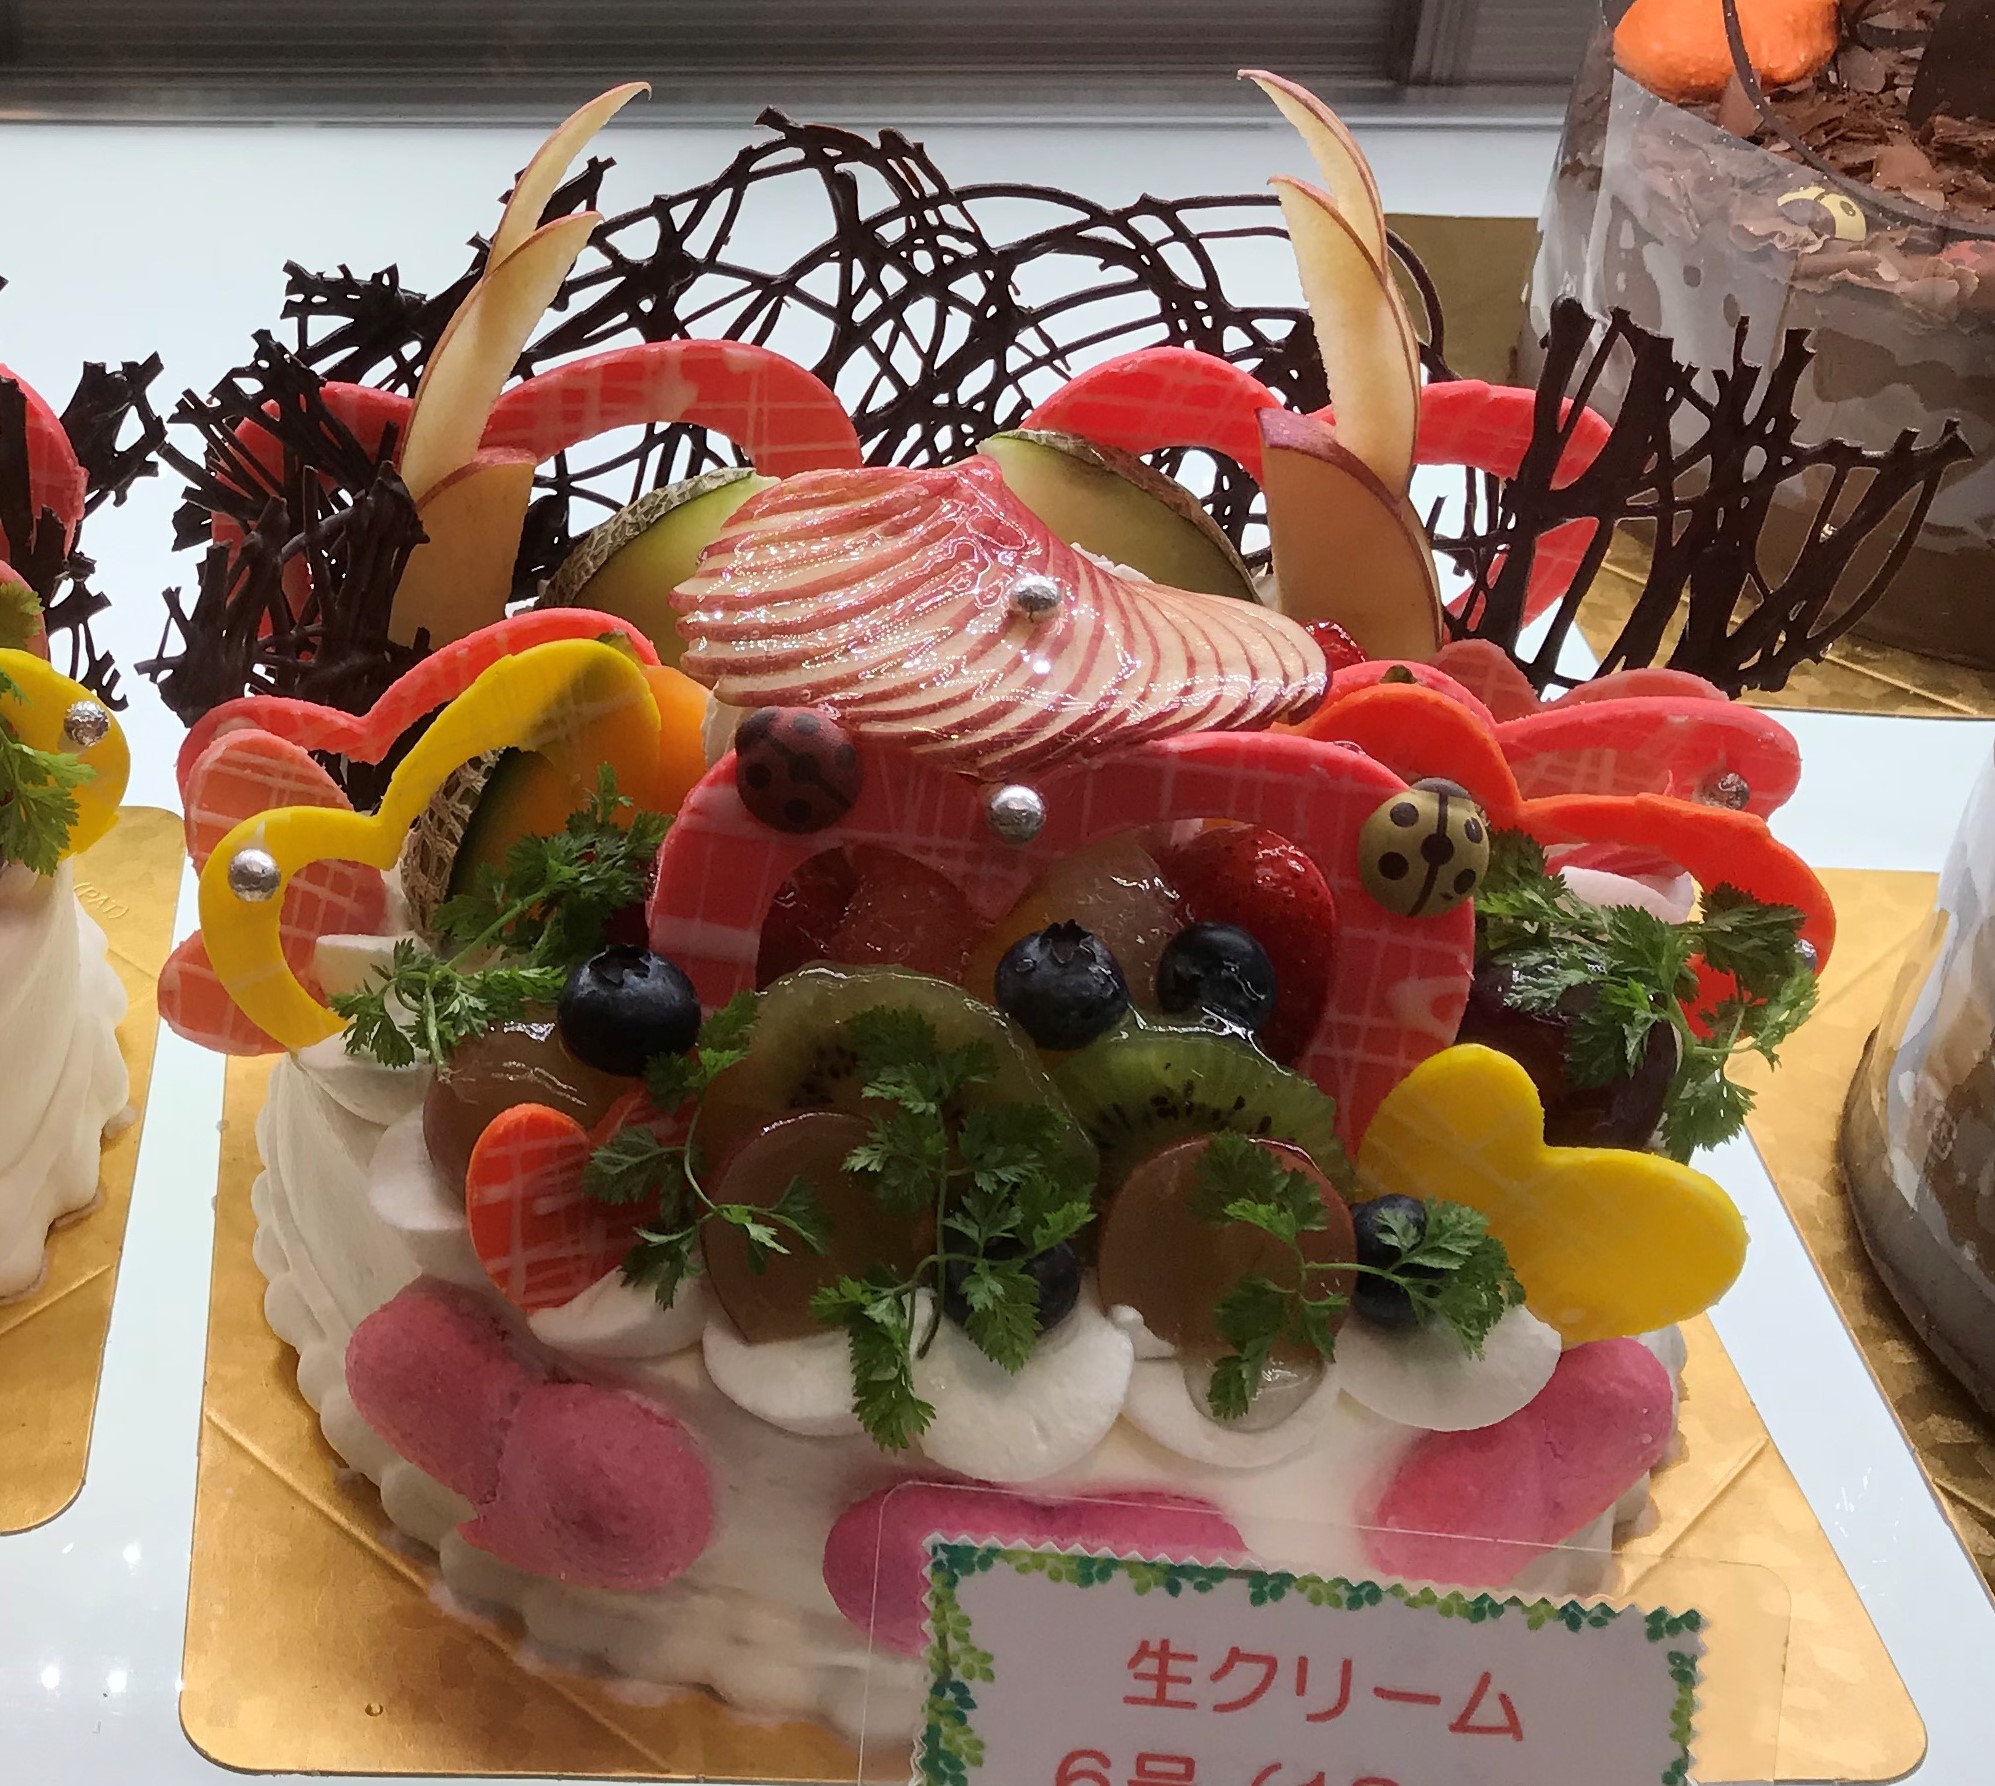 クリスマスケーキの熊本での人気おすすめは 予約方法もチェック 今日を明るく